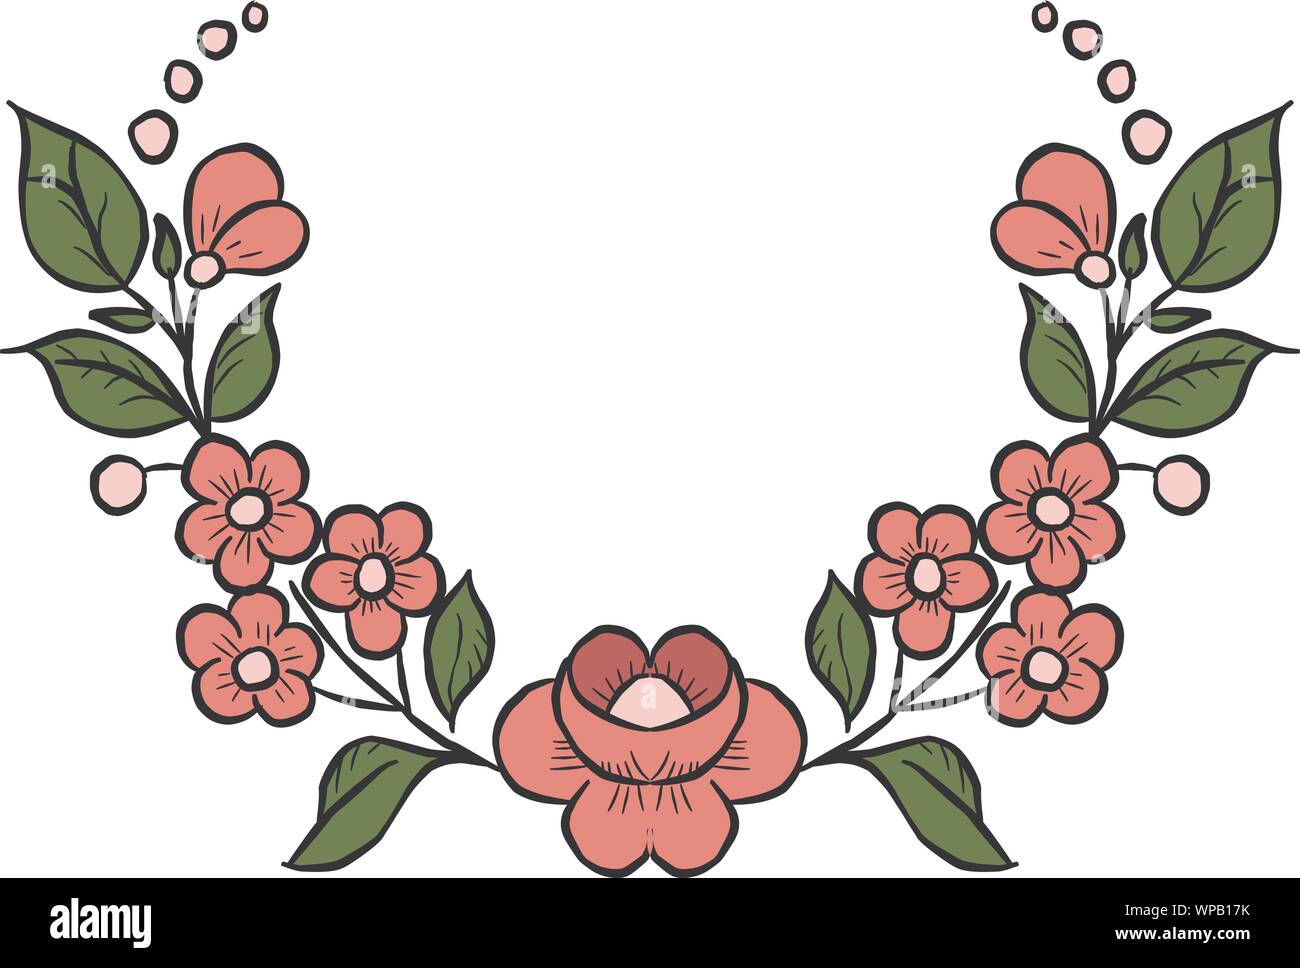 Vettore di disegno di fiori e foglie, isolata composizione floreale, disegnato a mano illustrazione botanica Illustrazione Vettoriale